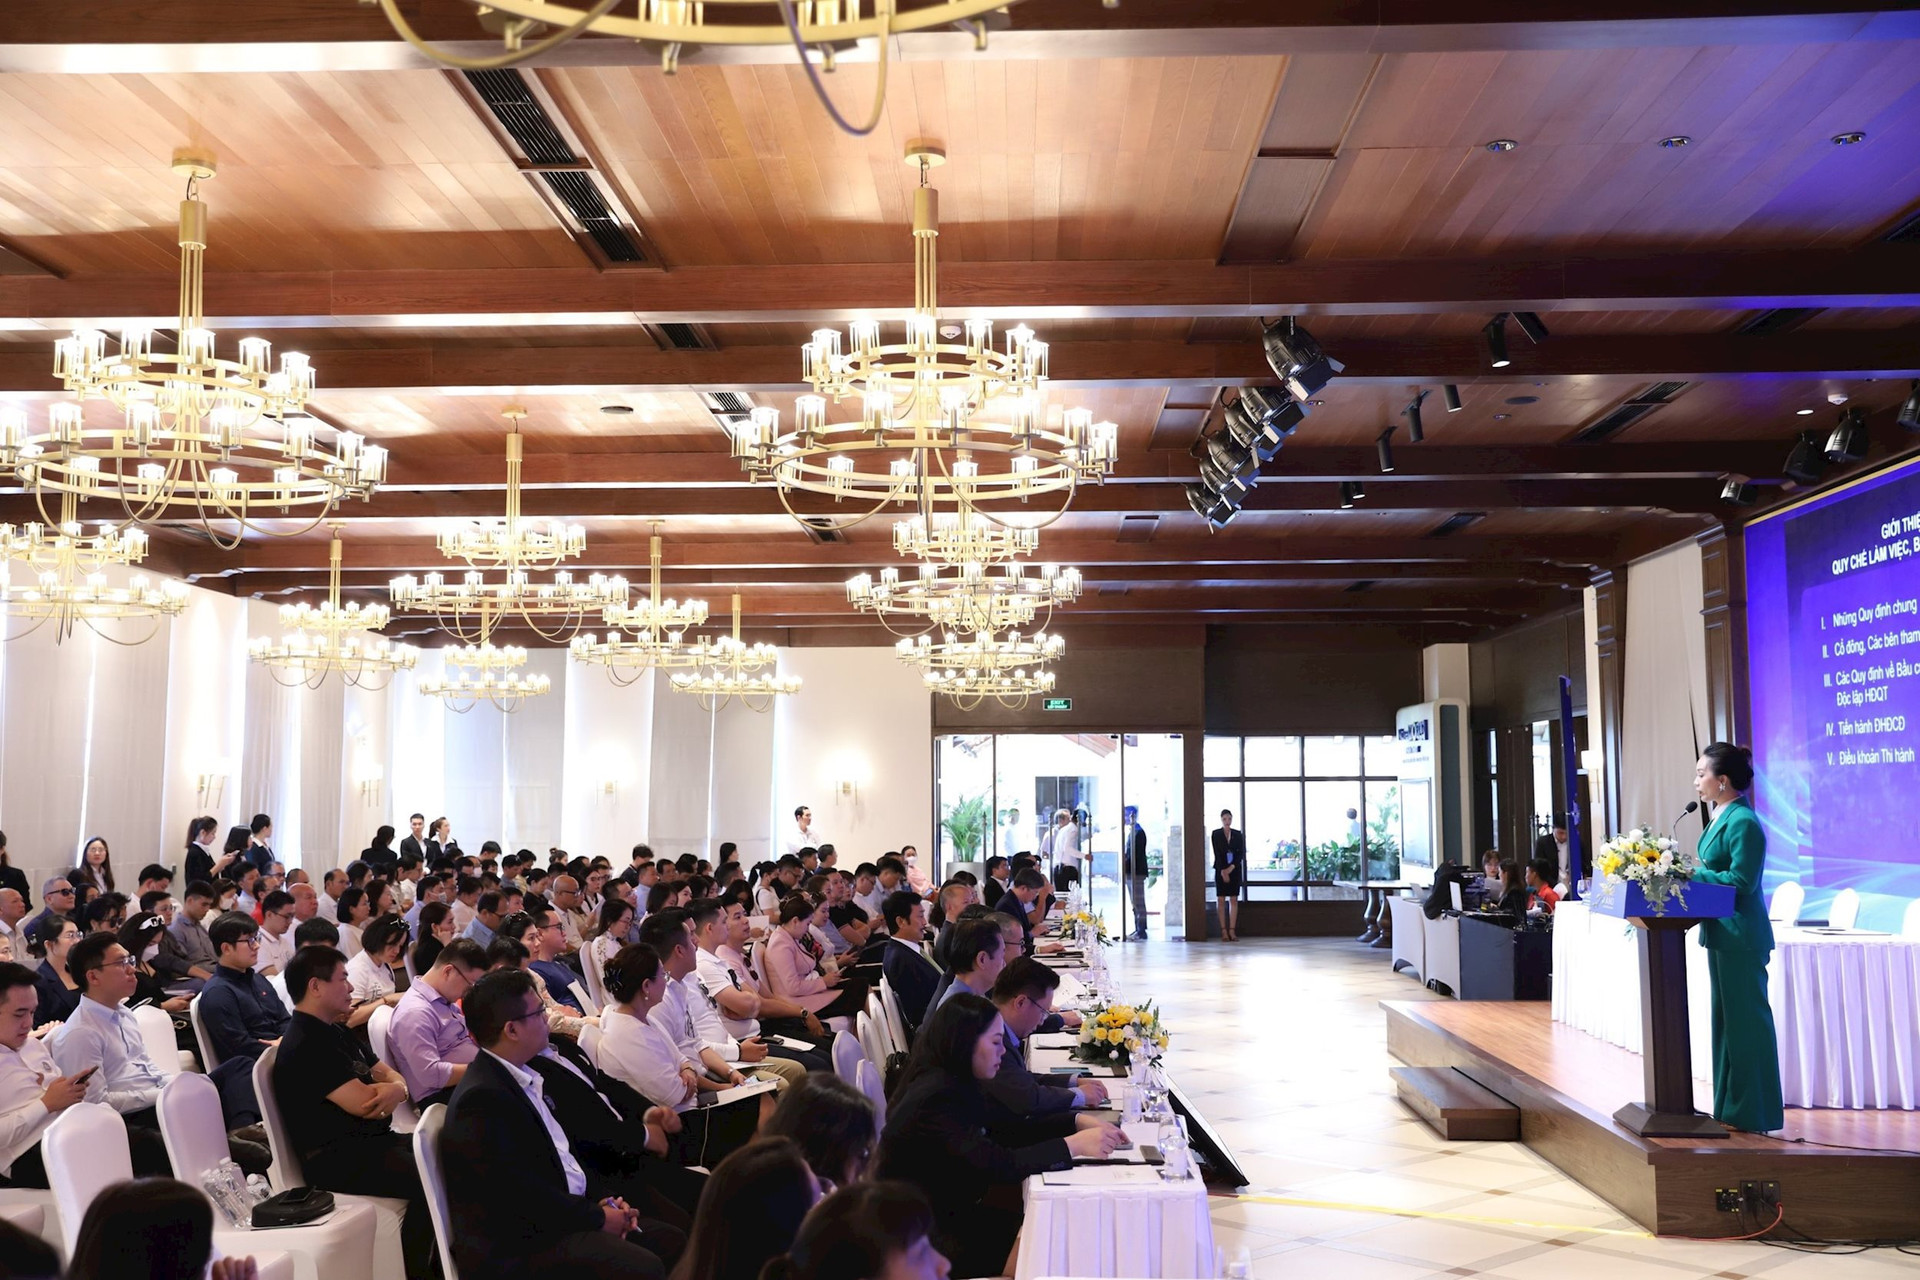 Chủ tịch Bùi Thành Nhơn: ĐHCĐ 2023 đặc biệt nhất trong 30 năm của Novaland, chúng tôi cam kết nỗ lực hành động bù đắp cho khách hàng, cổ đông - Ảnh 2.